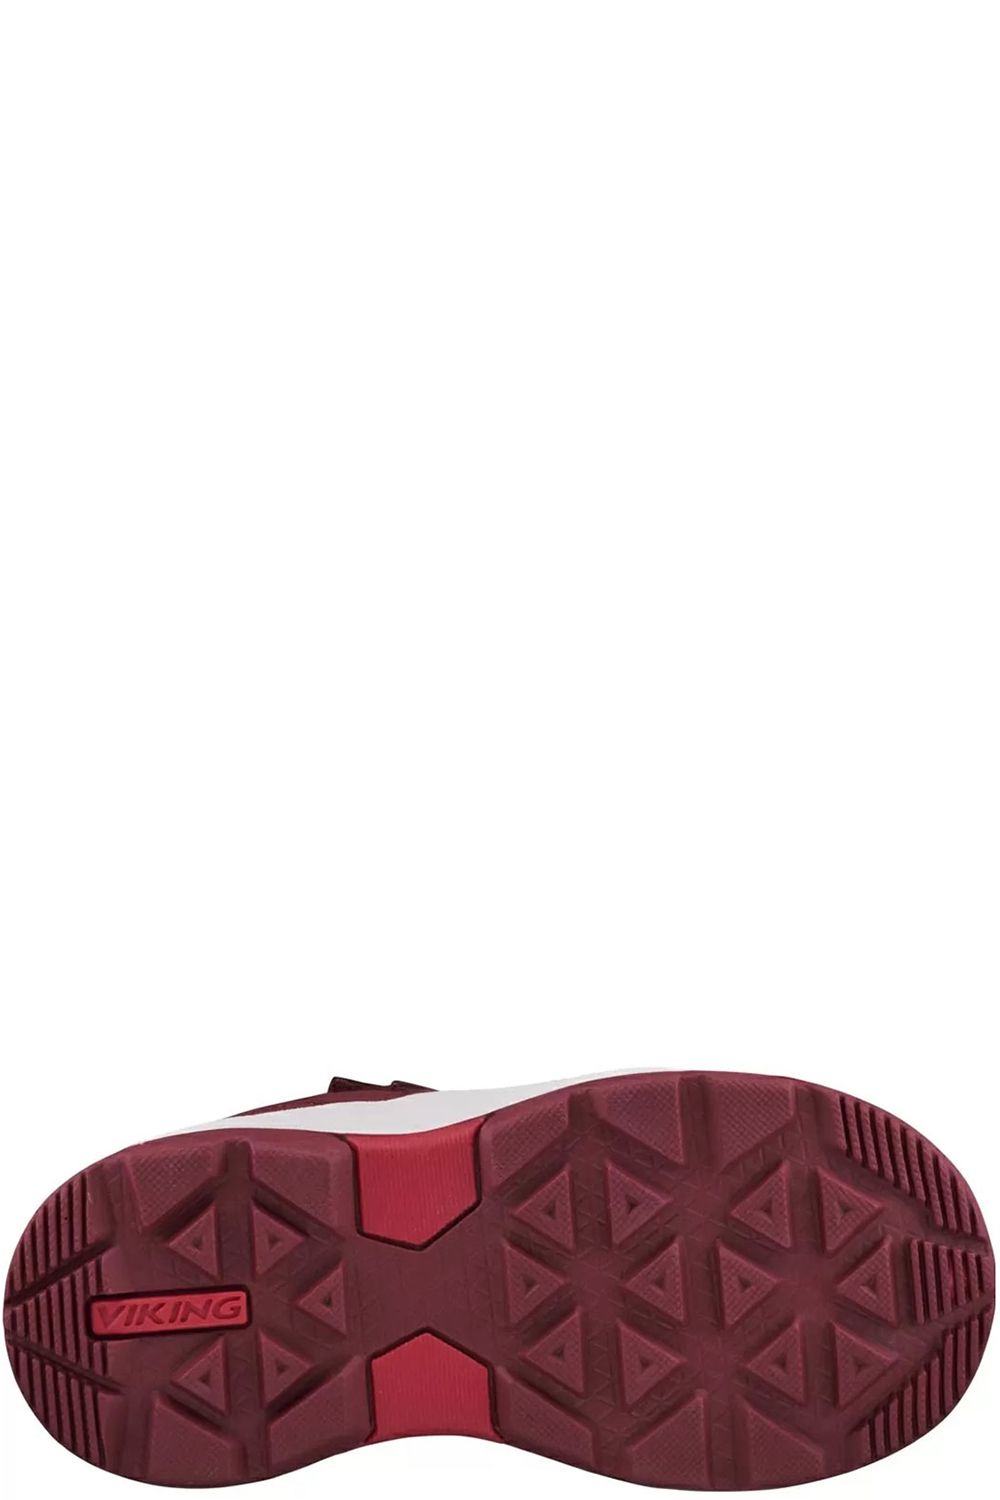 Ботинки Viking, размер 25, цвет красный 3-87060-5210 - фото 2